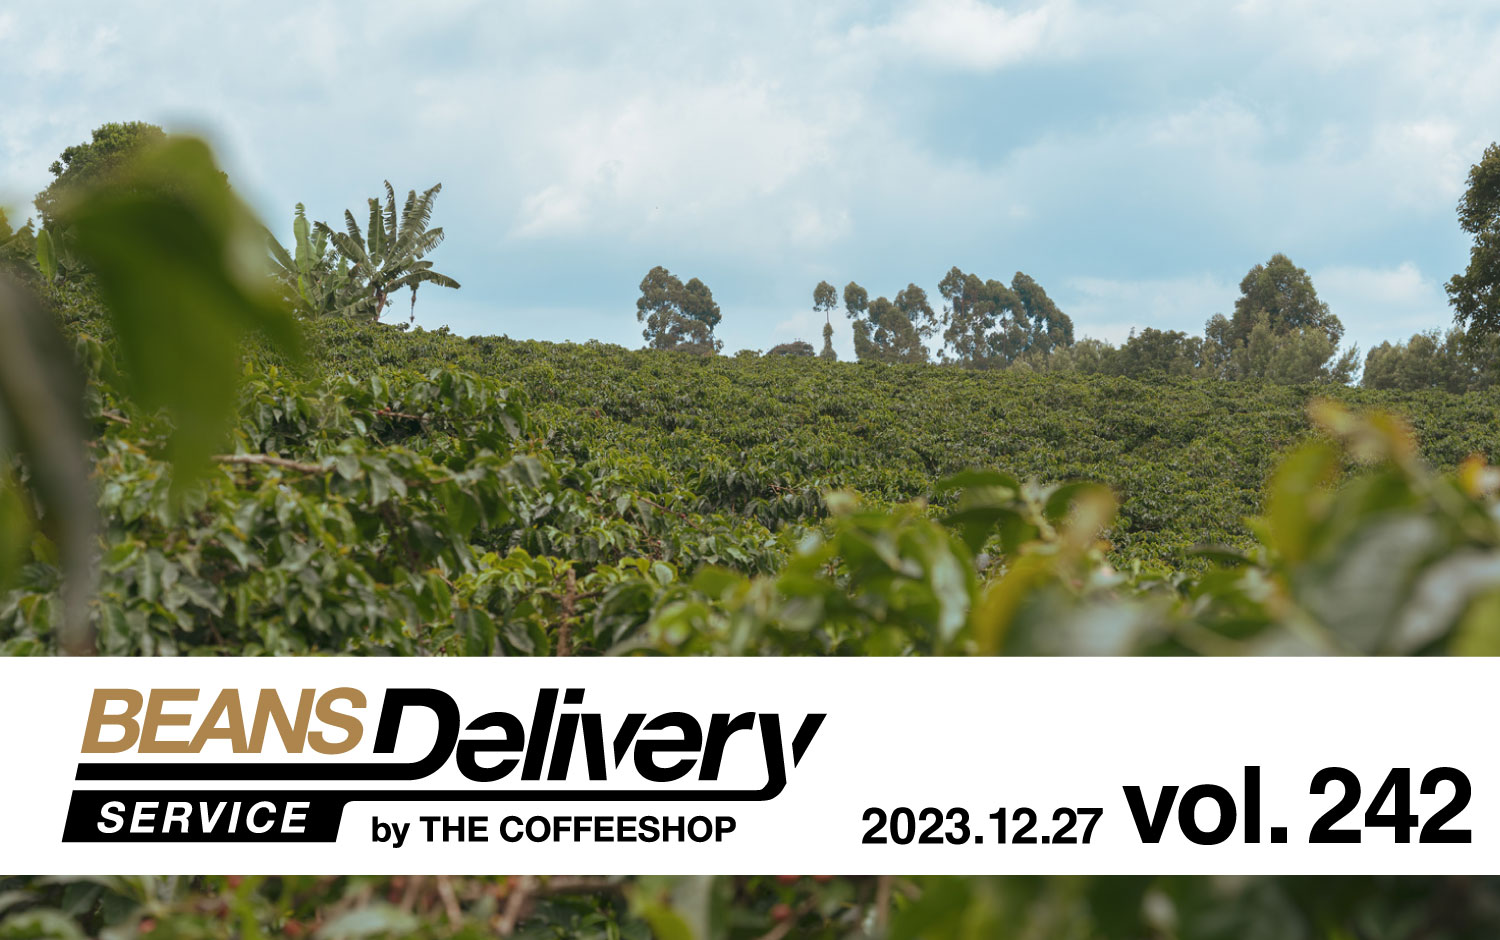 2023年12月13日発送のコーヒー定期便は、ケニアとブラジルをお届け！BDS MAGAZINE vol.241〈スペシャルティコーヒーサブスク Beans Delivery Service〉